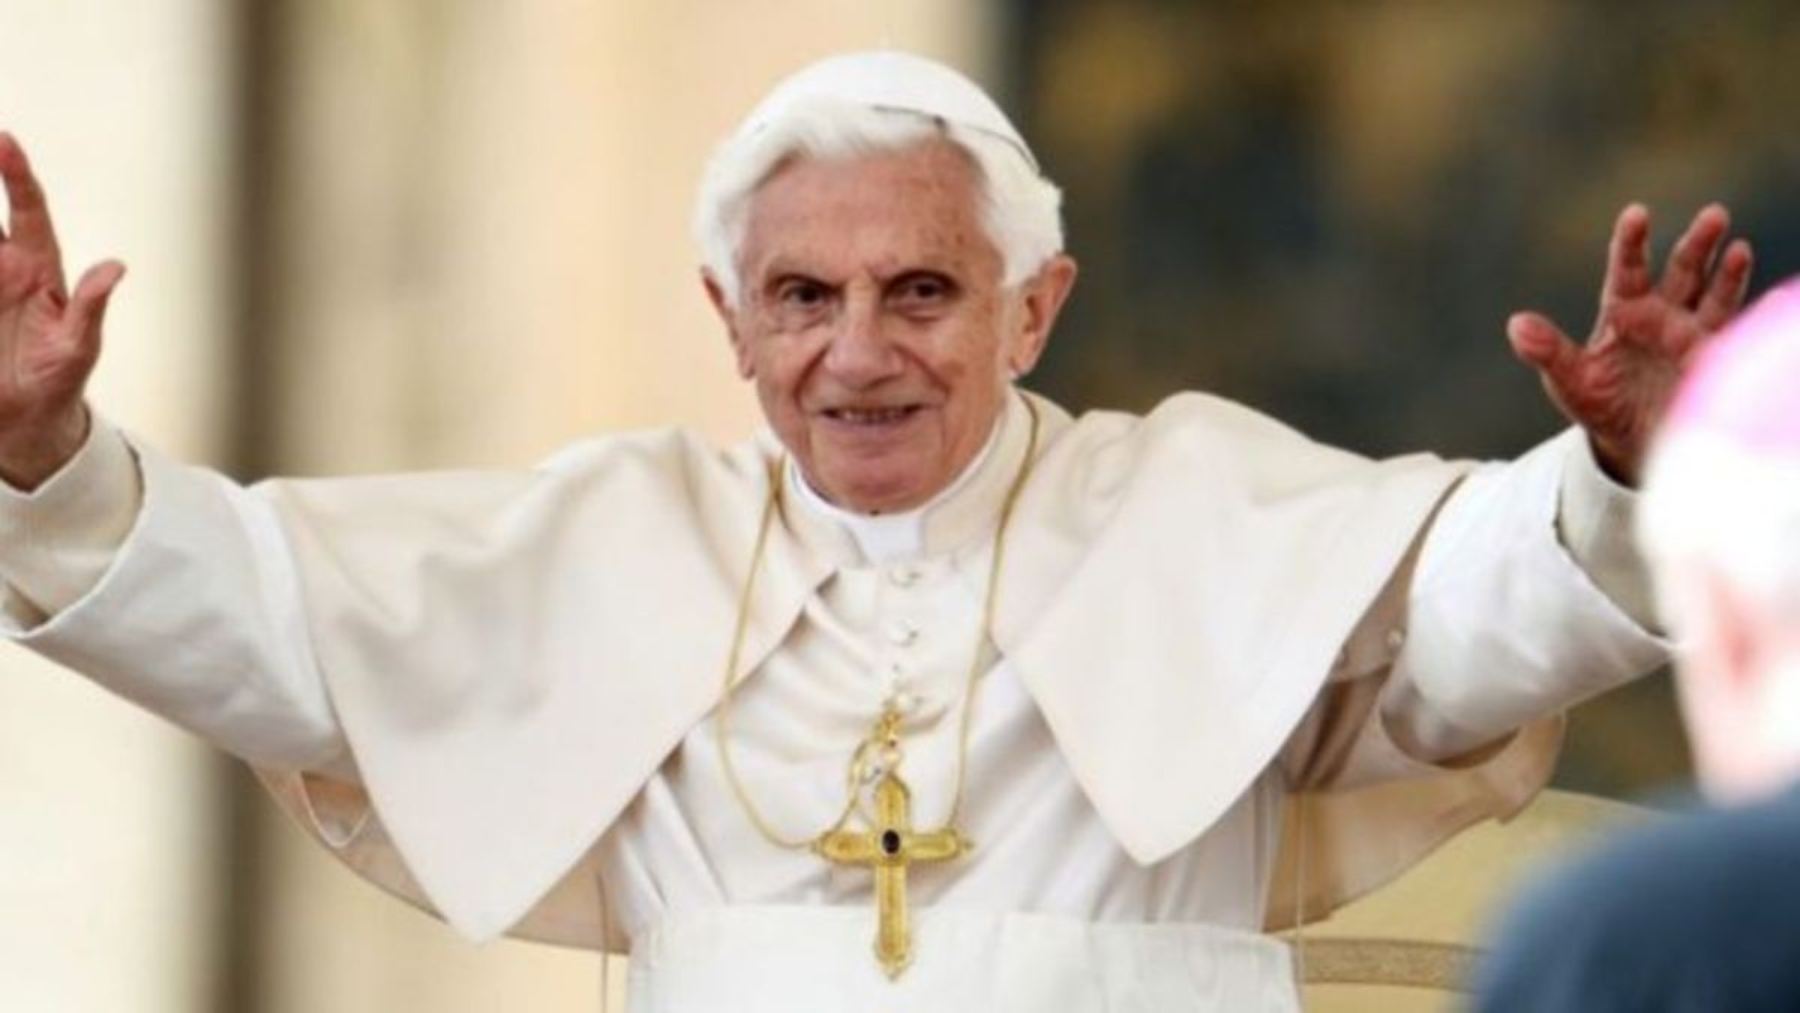 Benedicto XVI, el Papa más moderno de la historia: el primero que utilizó Twitter